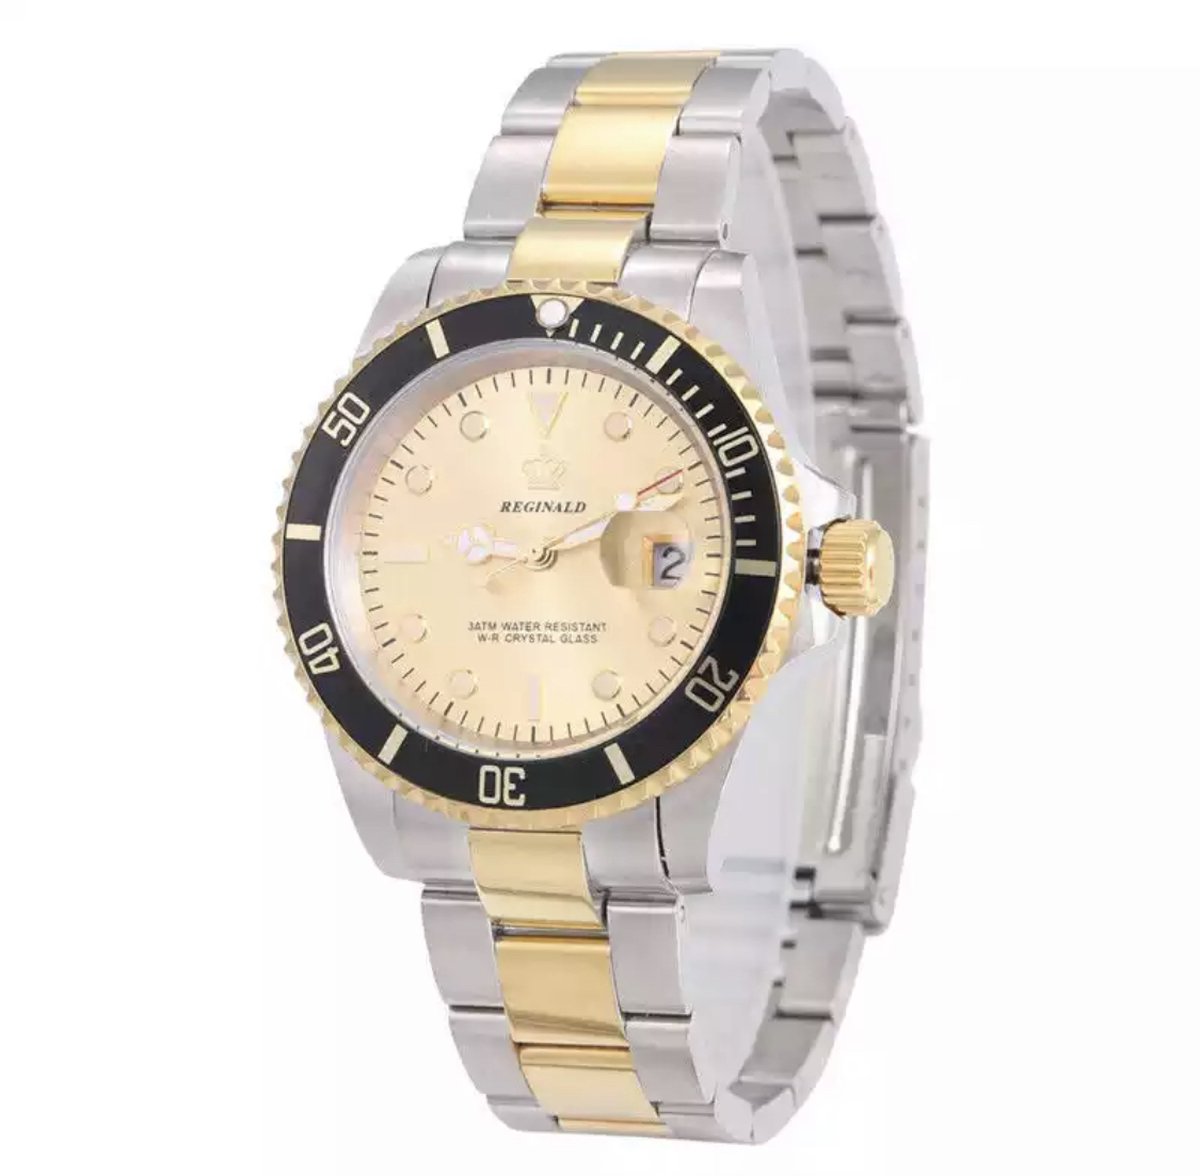 Reginald Horloges - Silver Gold - Horloge mannen/vrouwen - Luxe Design - Heren/dames horloge - 40 mm - Roestvrij Staal - Waterdicht - Schokbestendig - Geschenkset